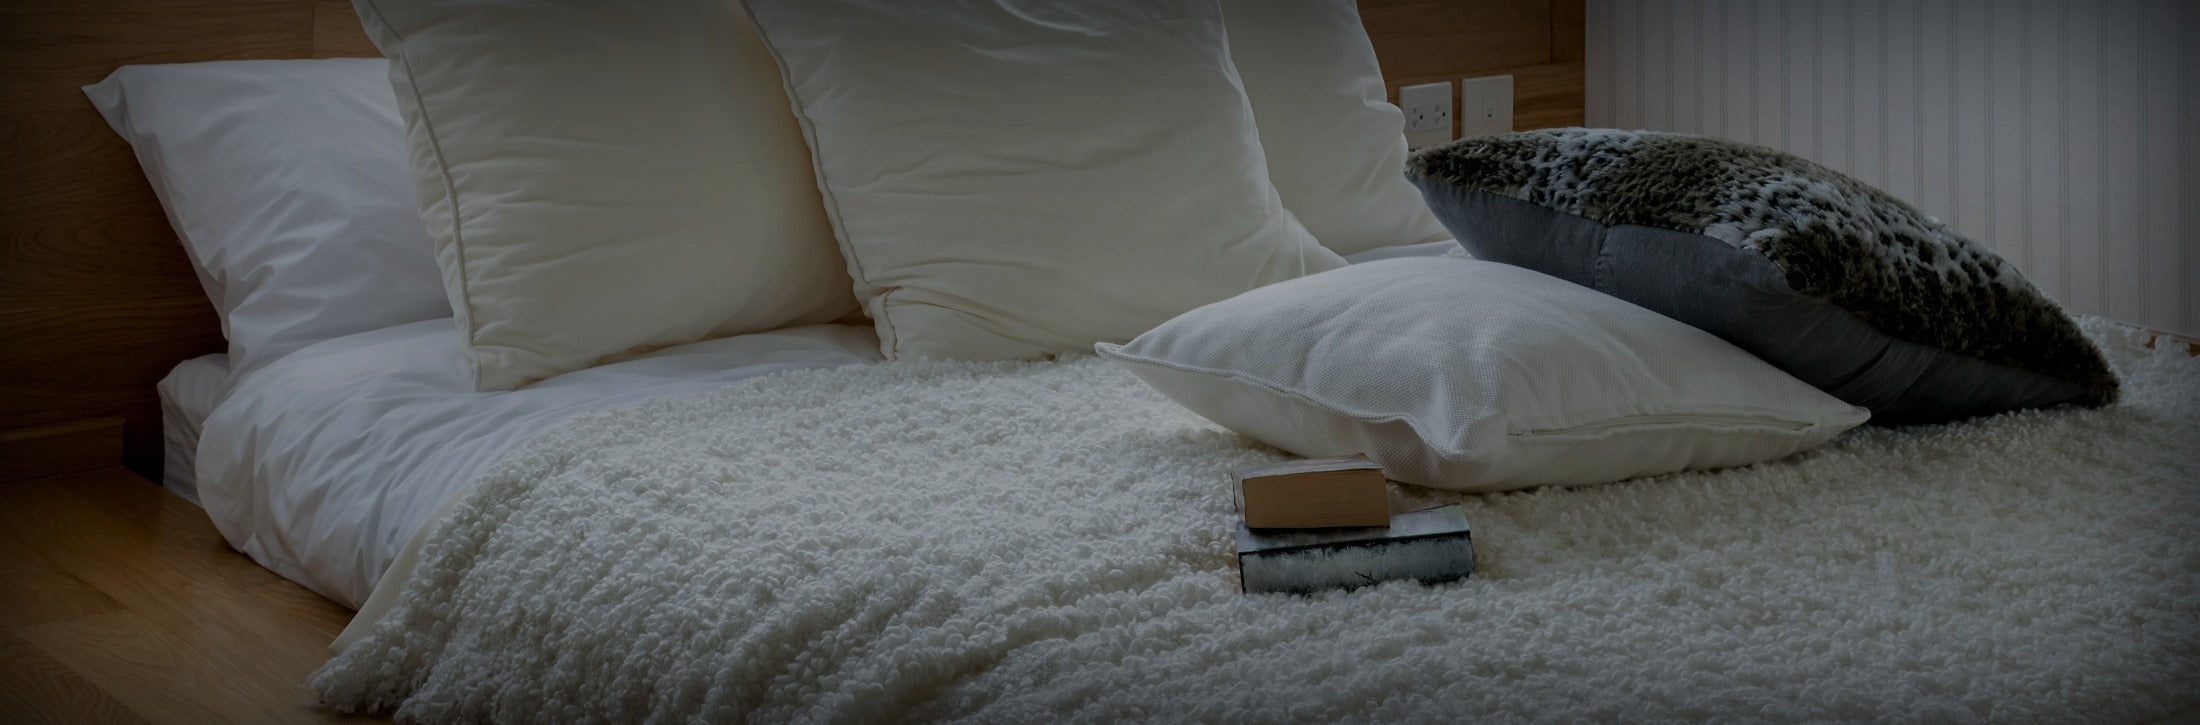 5 Smart Bedtime Habits to Help You Sleep Better